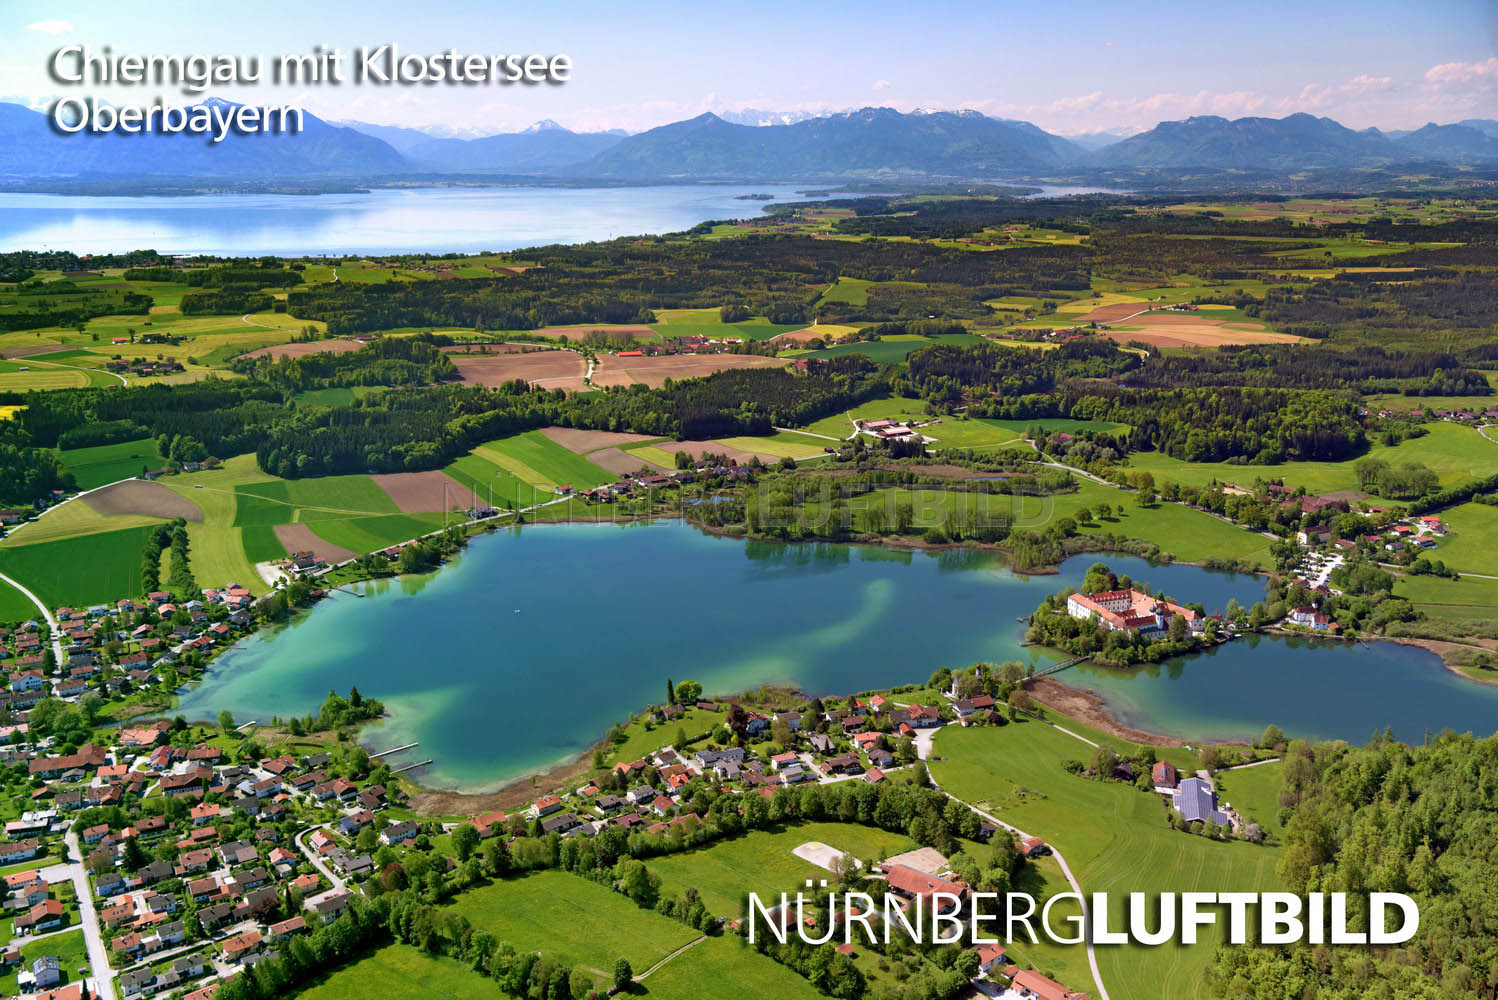 Chiemgau mit Klostersee, Oberbayern, Luftaufnahme